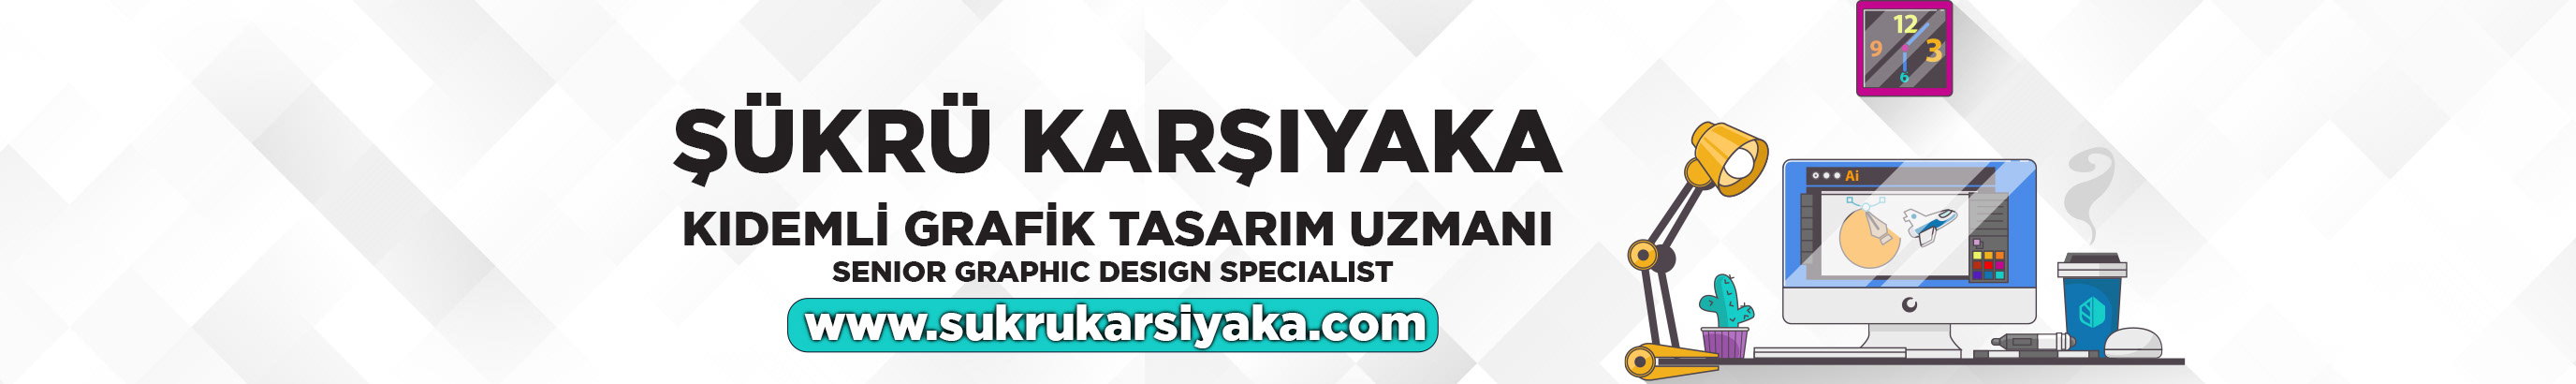 Şükrü Karşıyaka's profile banner